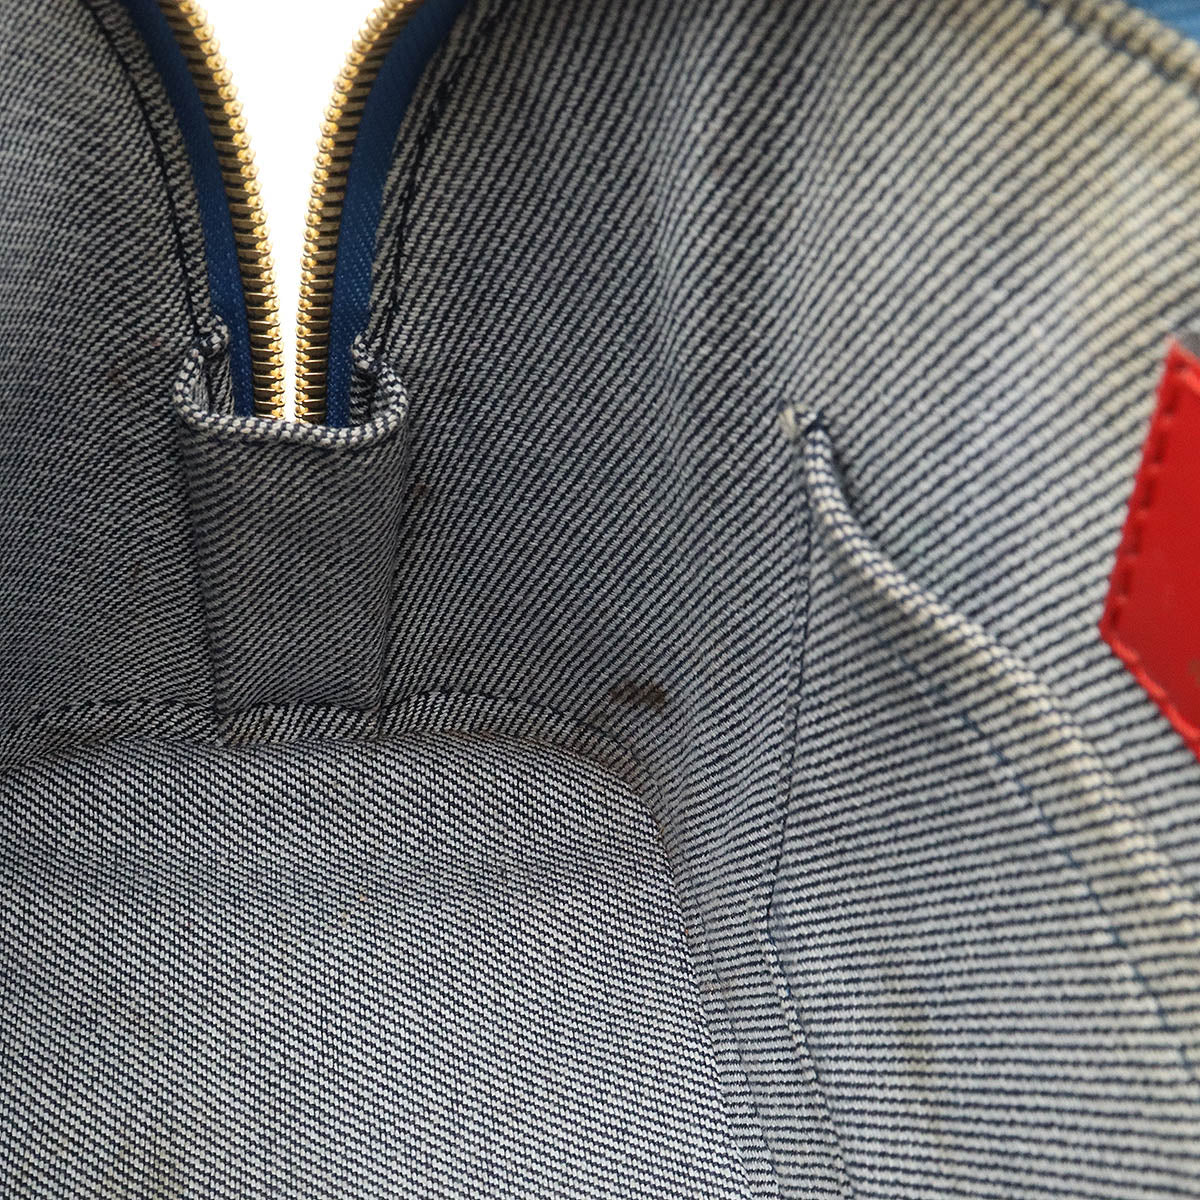 LOUIS VUITTON Louis Vuitton Monogram Denim Alma BB Handbag 2WAY Shoulder Bag Patchwork Blue Blue Red M45042